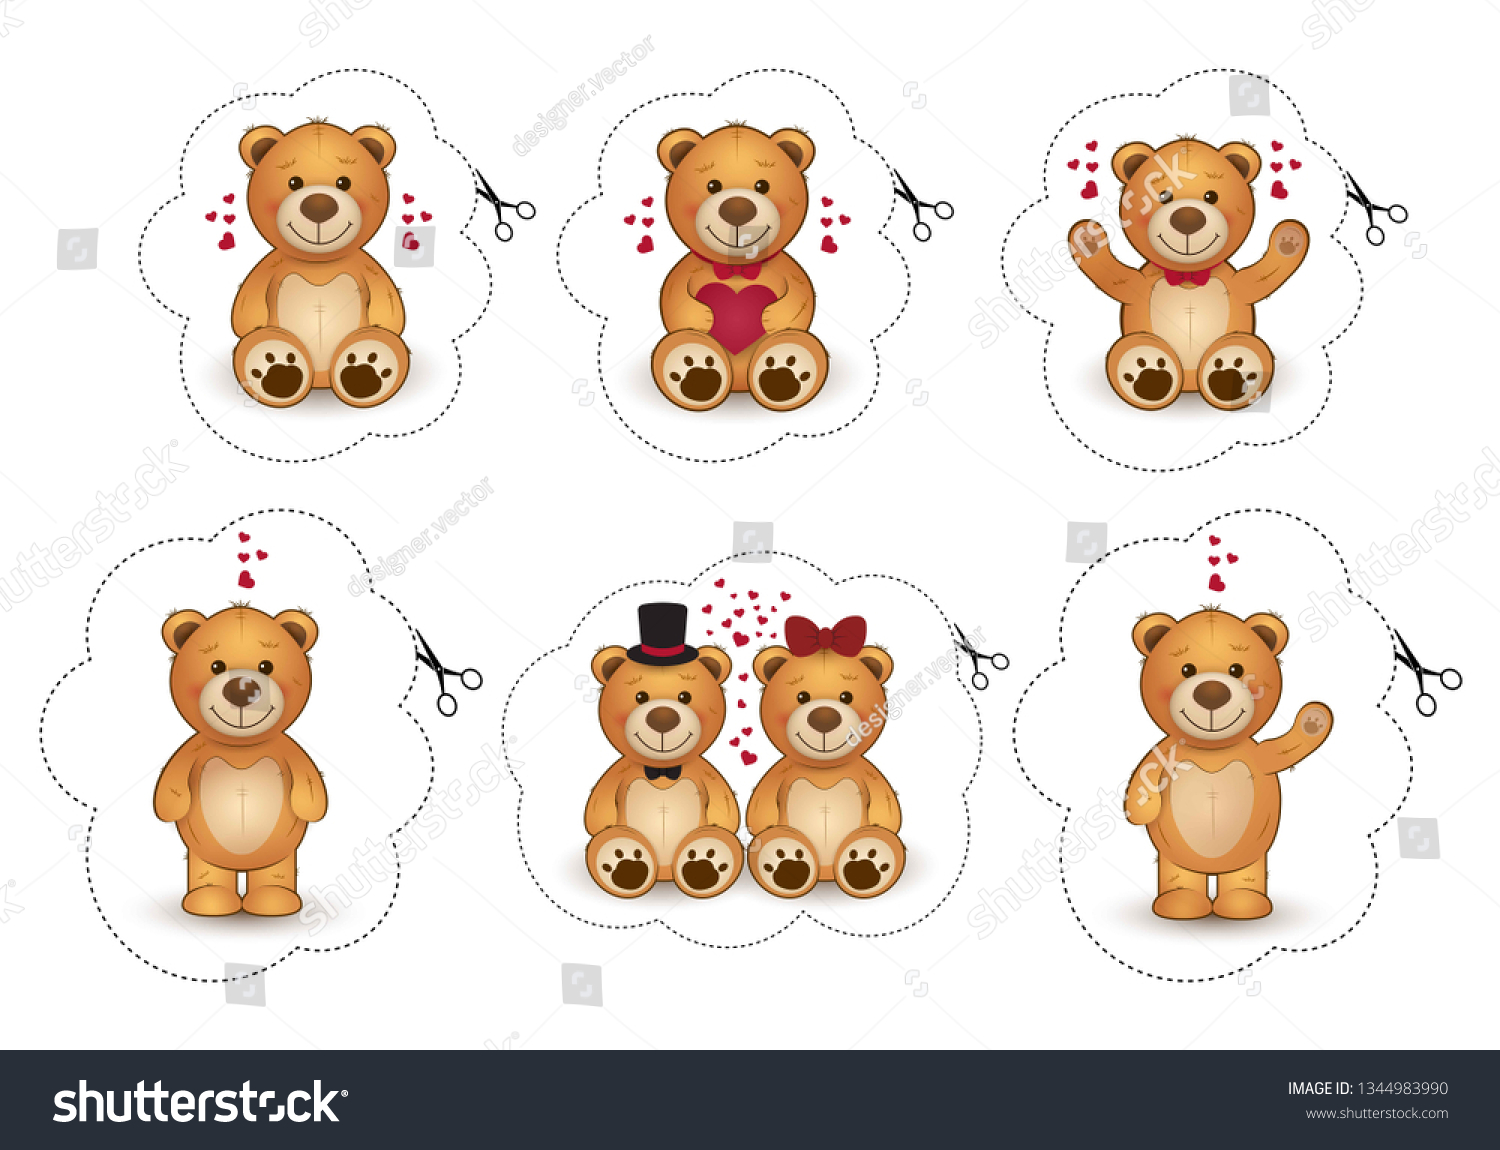 teddy stickers